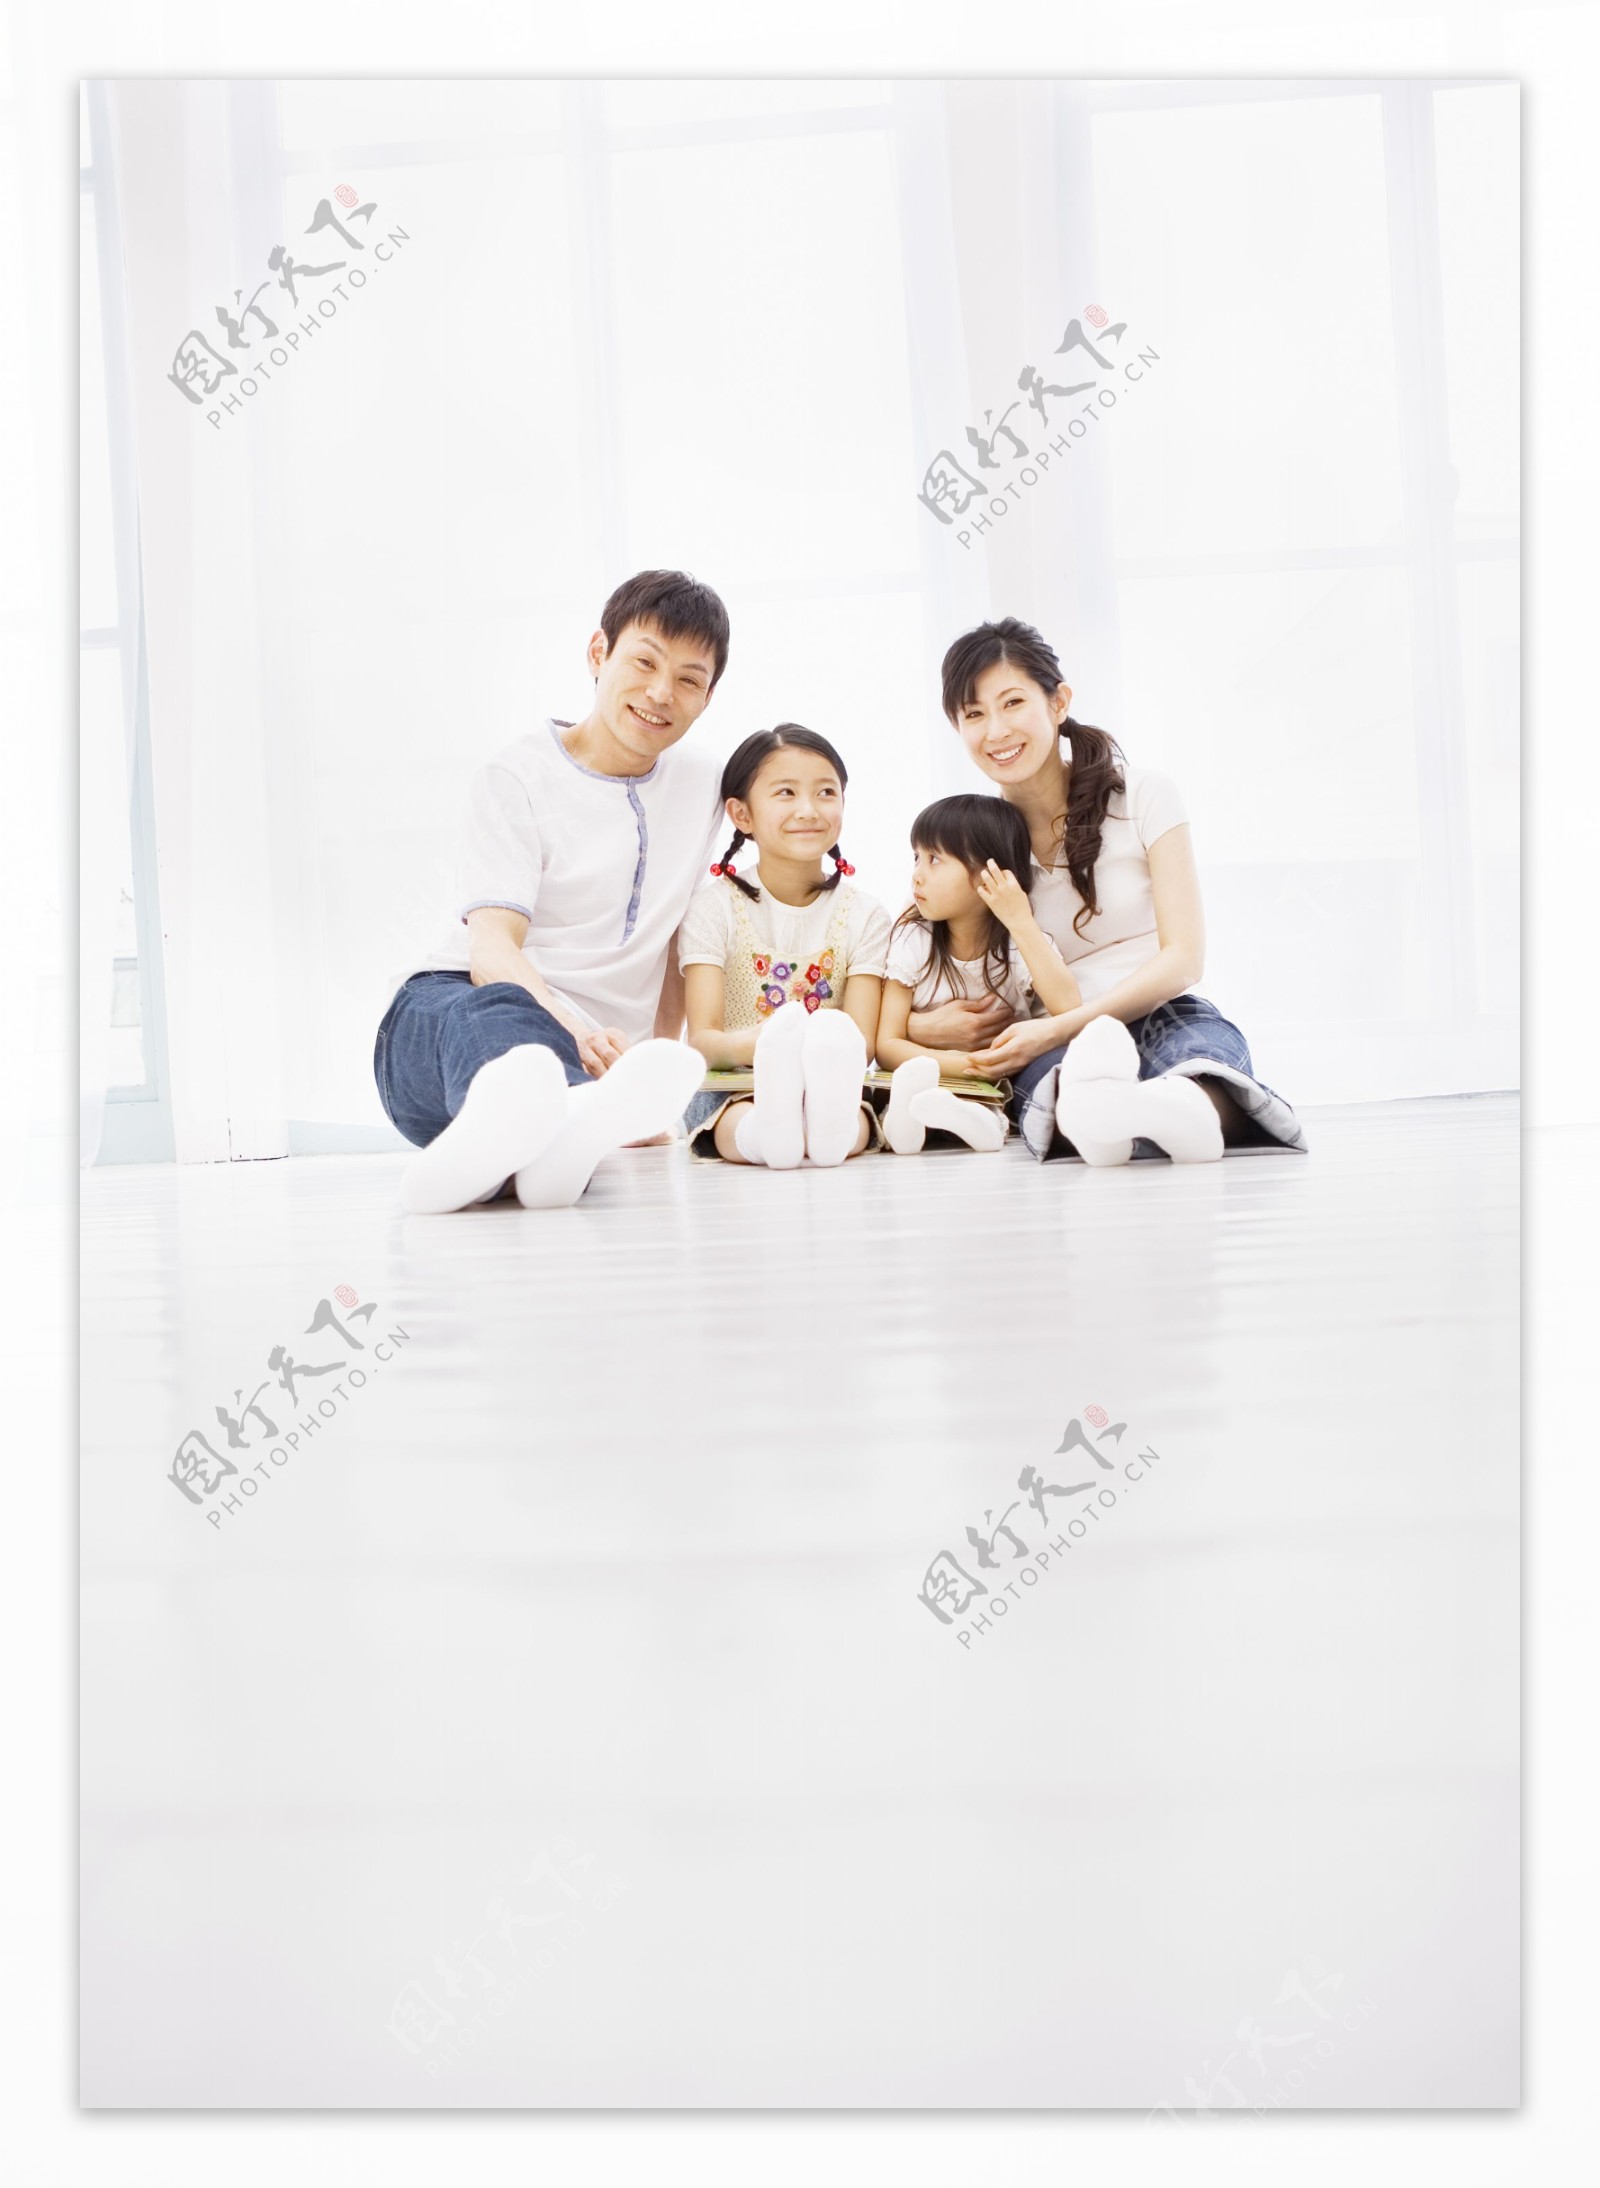 坐在地板上的幸福家人图片